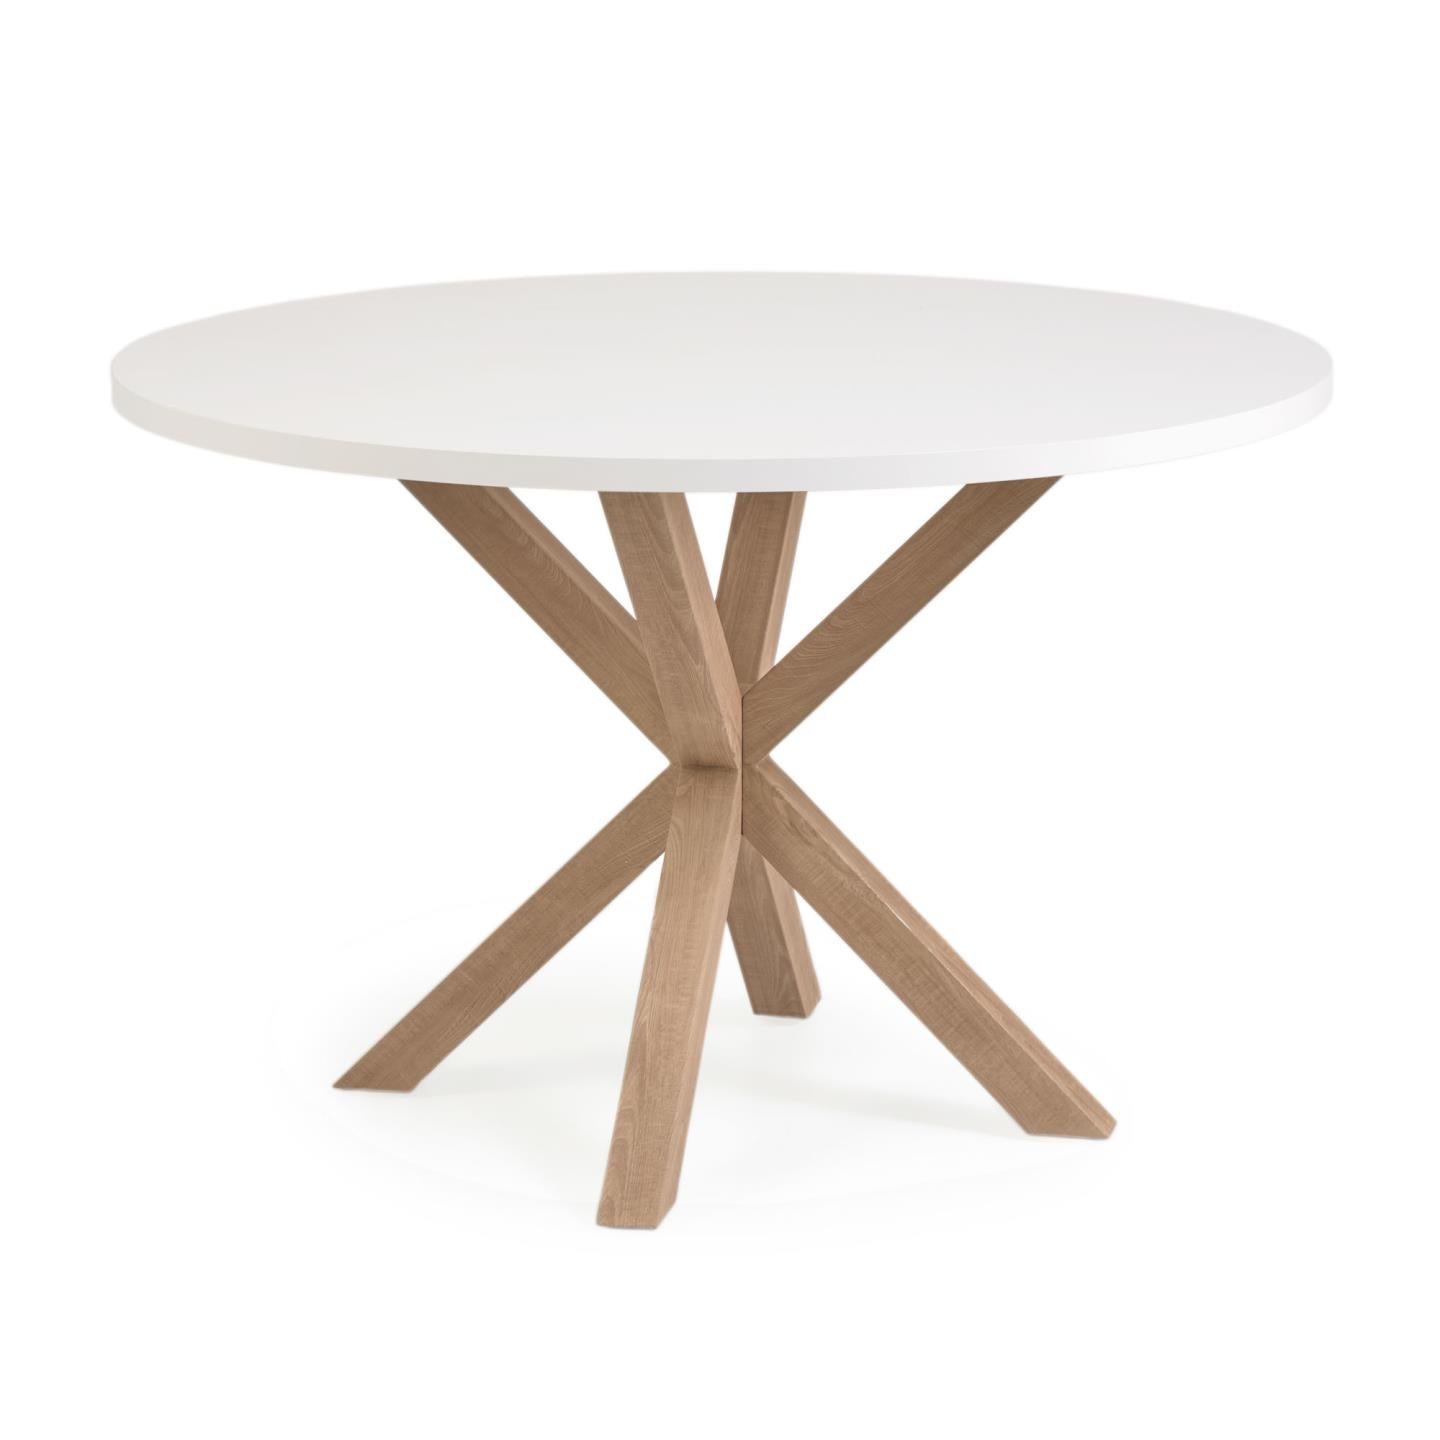 Argo kerek Ø 119 cm-es fehér melamin asztal, fahatású acéllábakkal, fahatású kivitelben